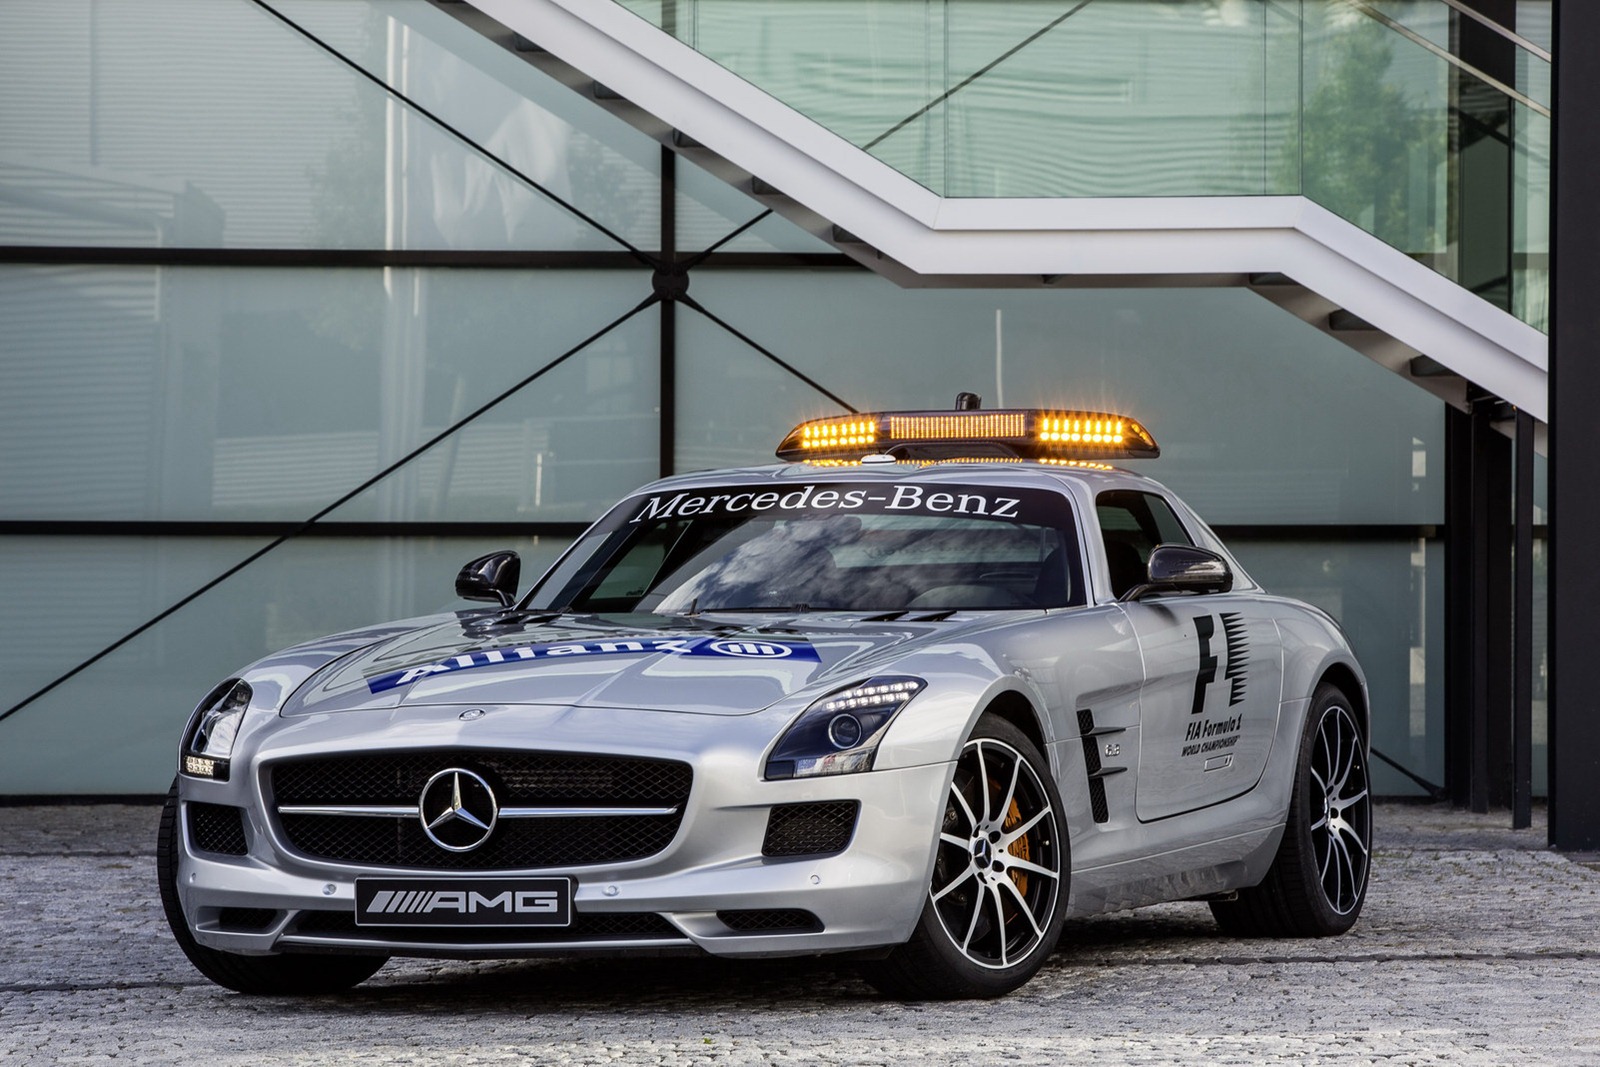 Mercedes-SLS-AMG-GT-Safety-Car-6%25255B2%25255D.jpg